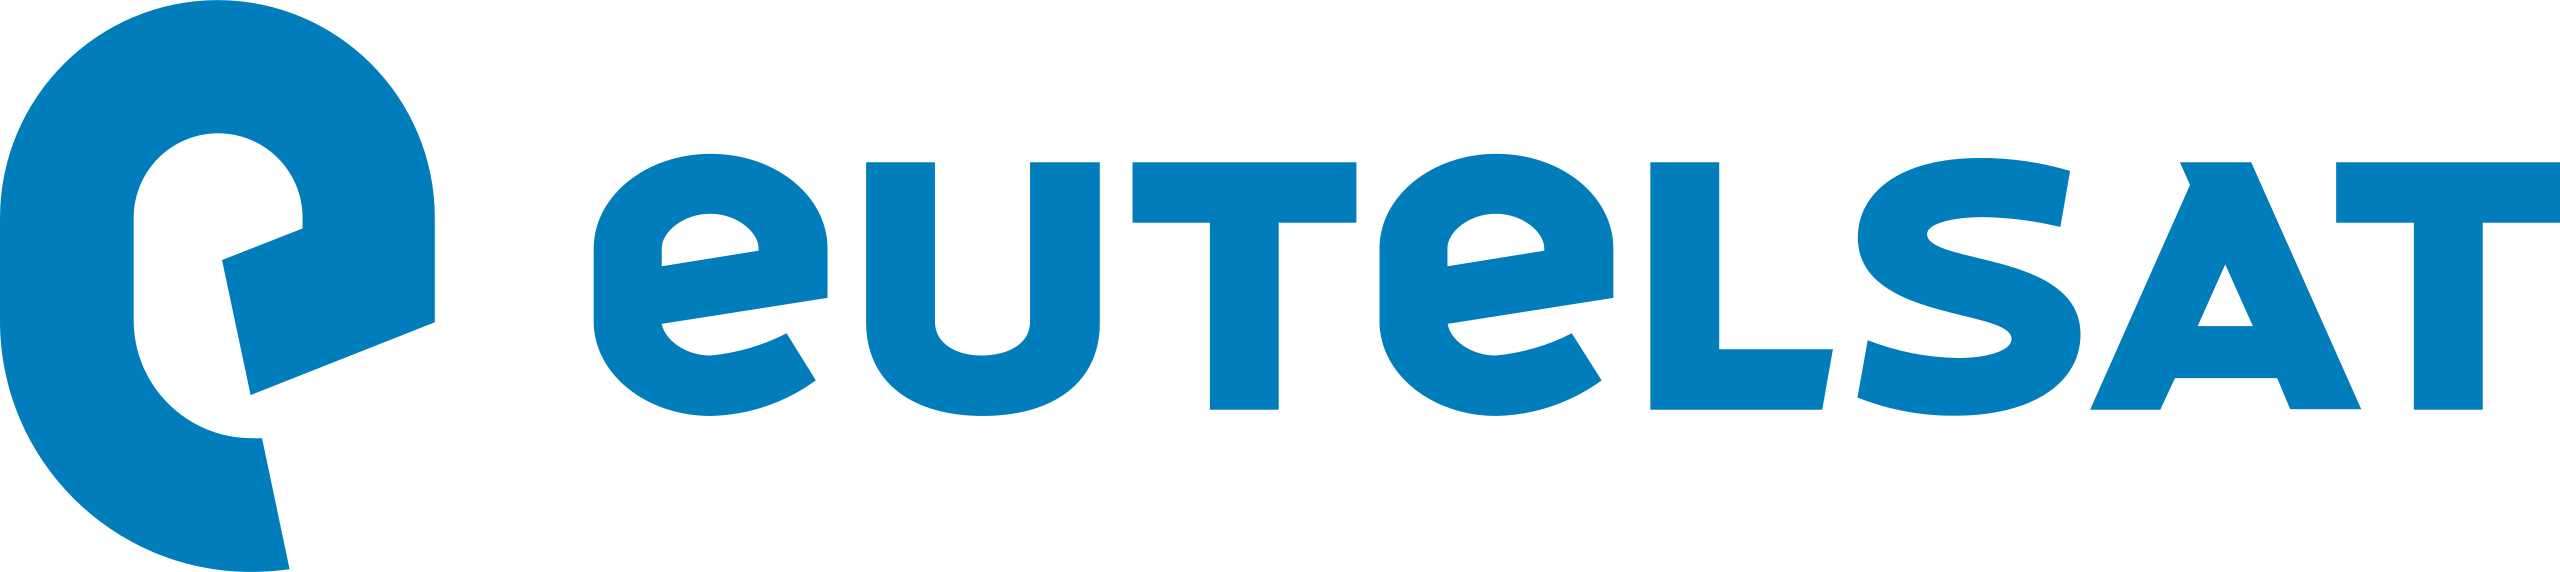 Logo_Eutelsat.svg